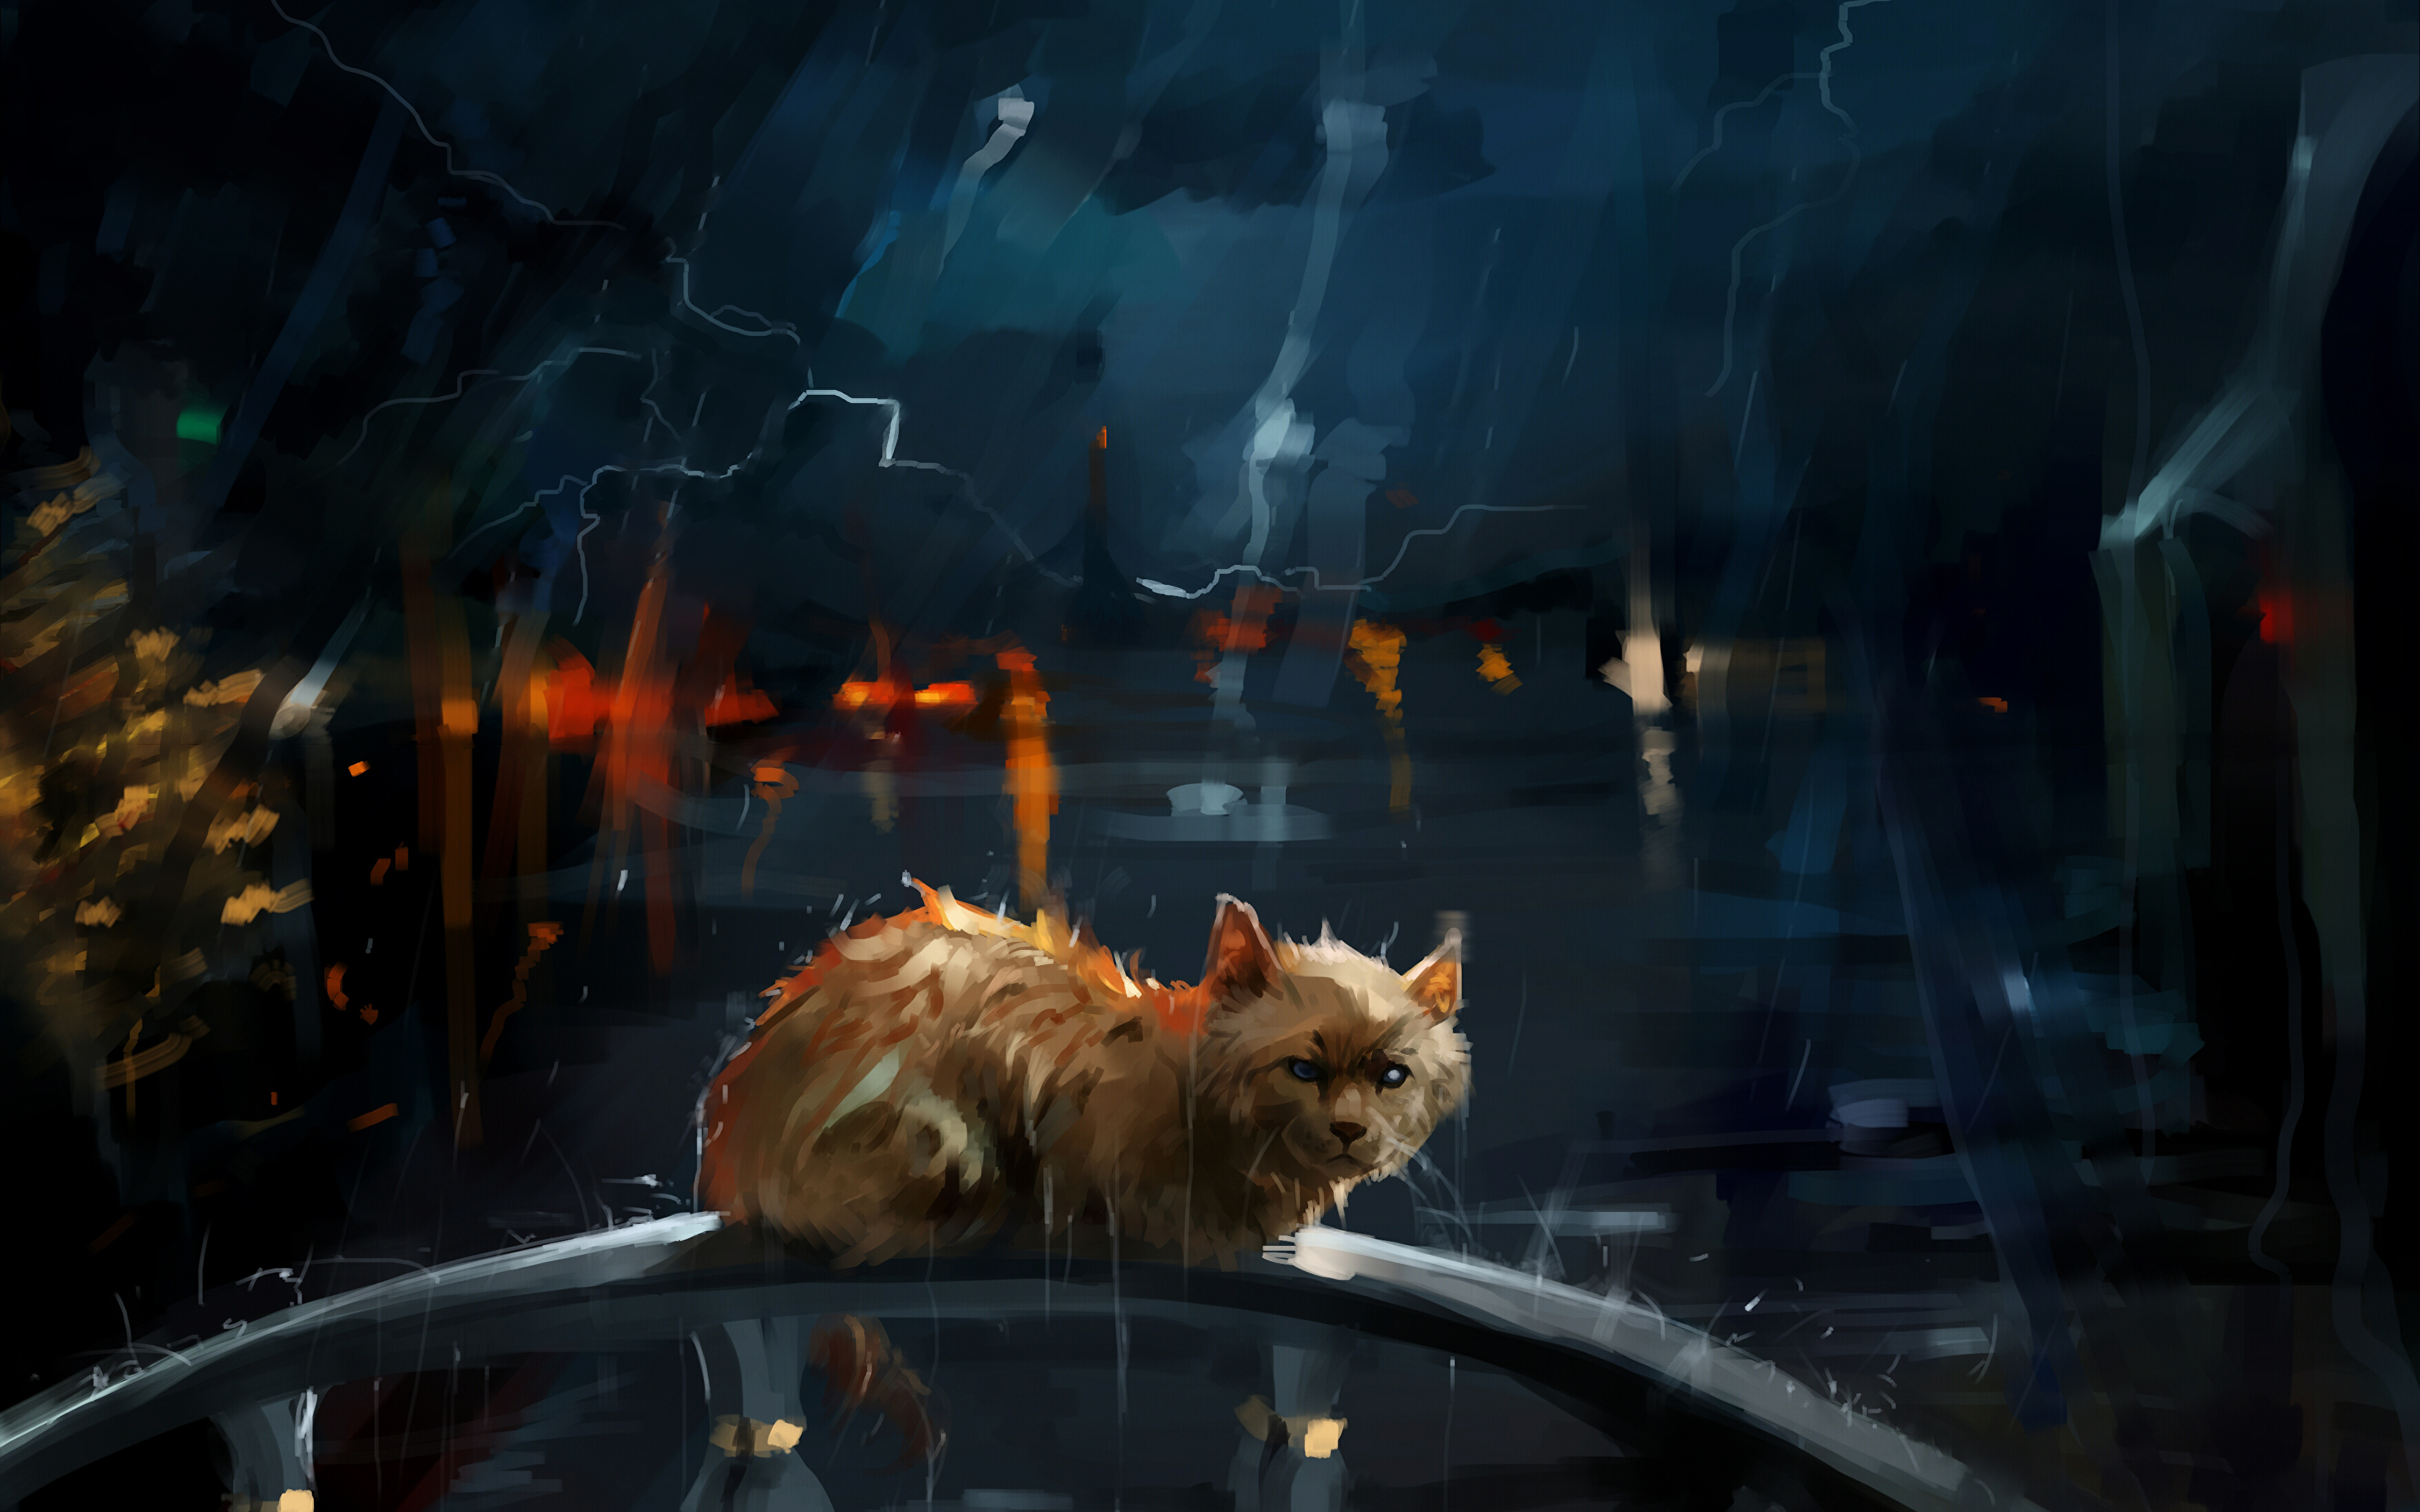 壁紙 3840x2400 飼い猫 描かれた壁紙 雨 夜 動物 ダウンロード 写真